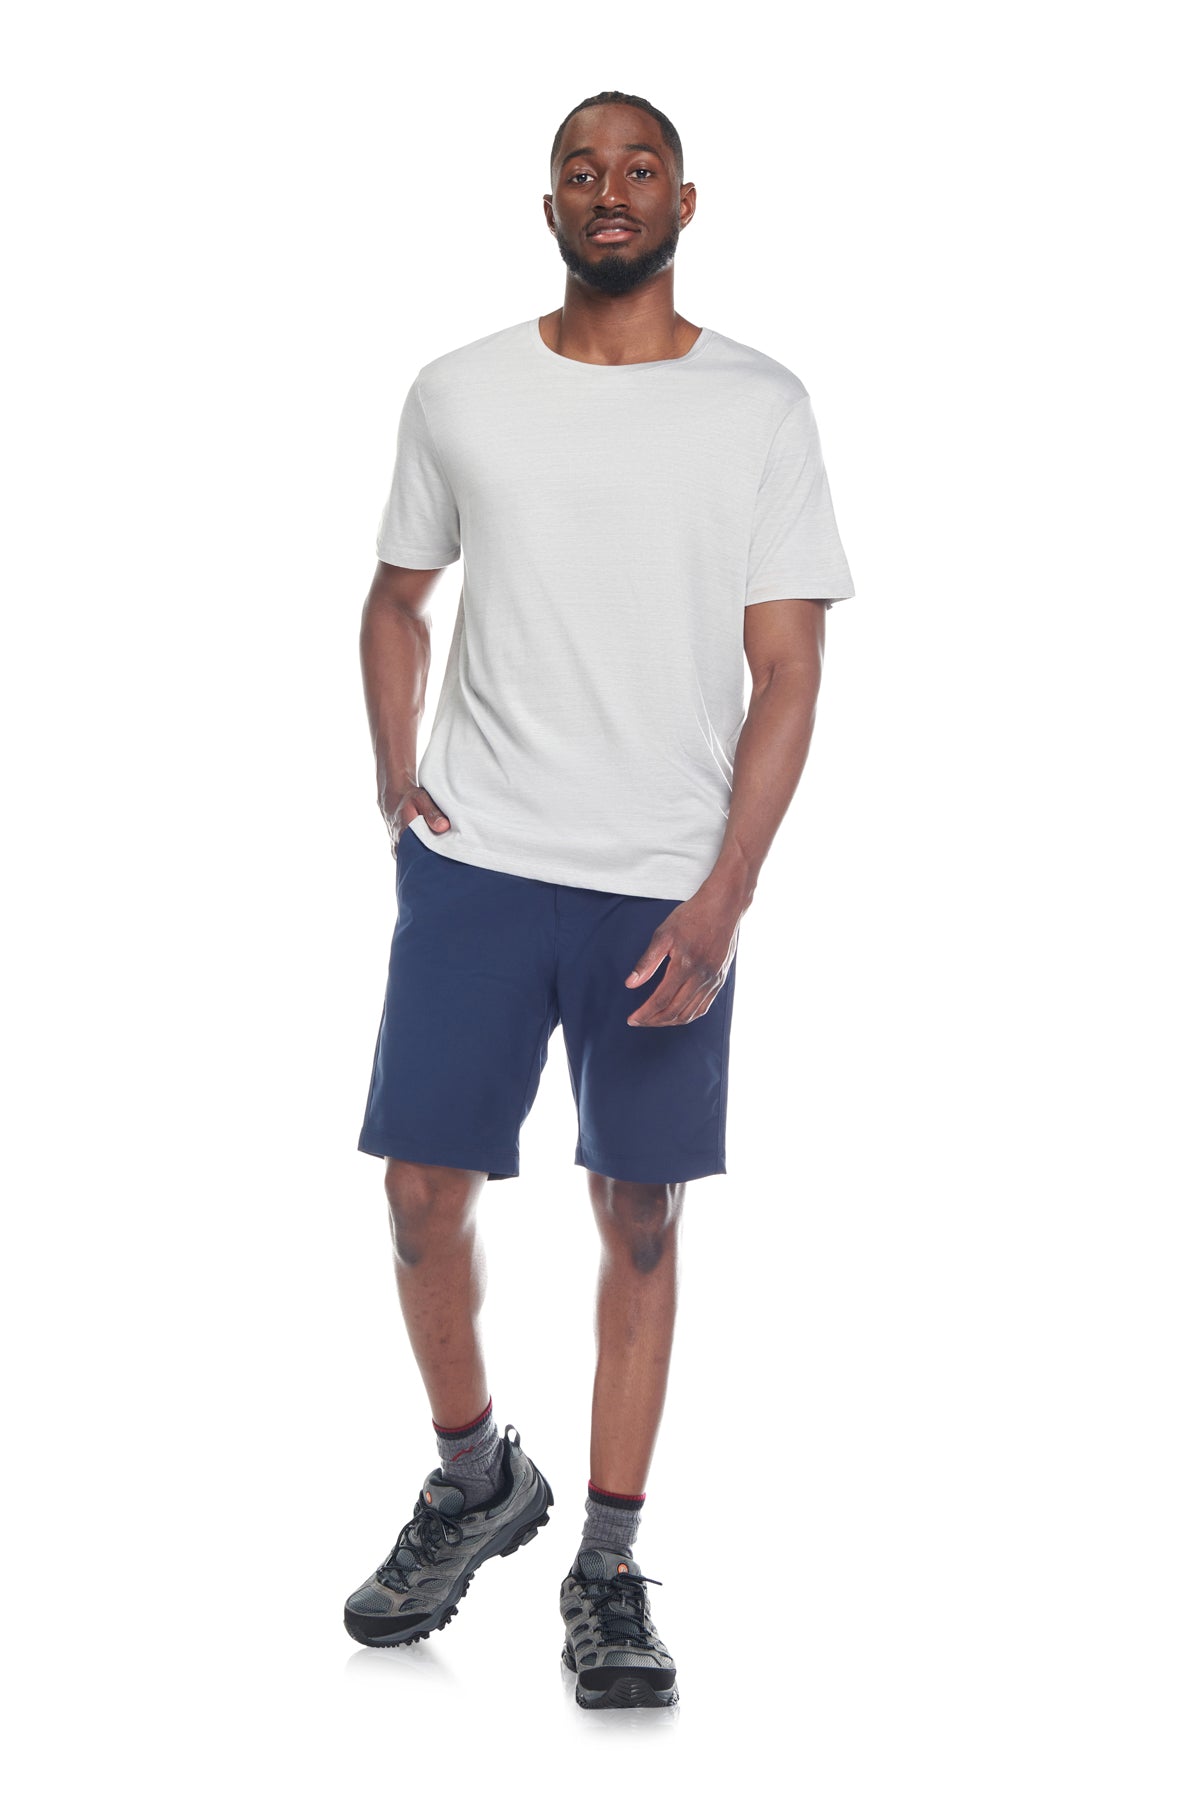 Kyodan Men's Short Sleeve Soft Workout Gym T-Shirt Green Small